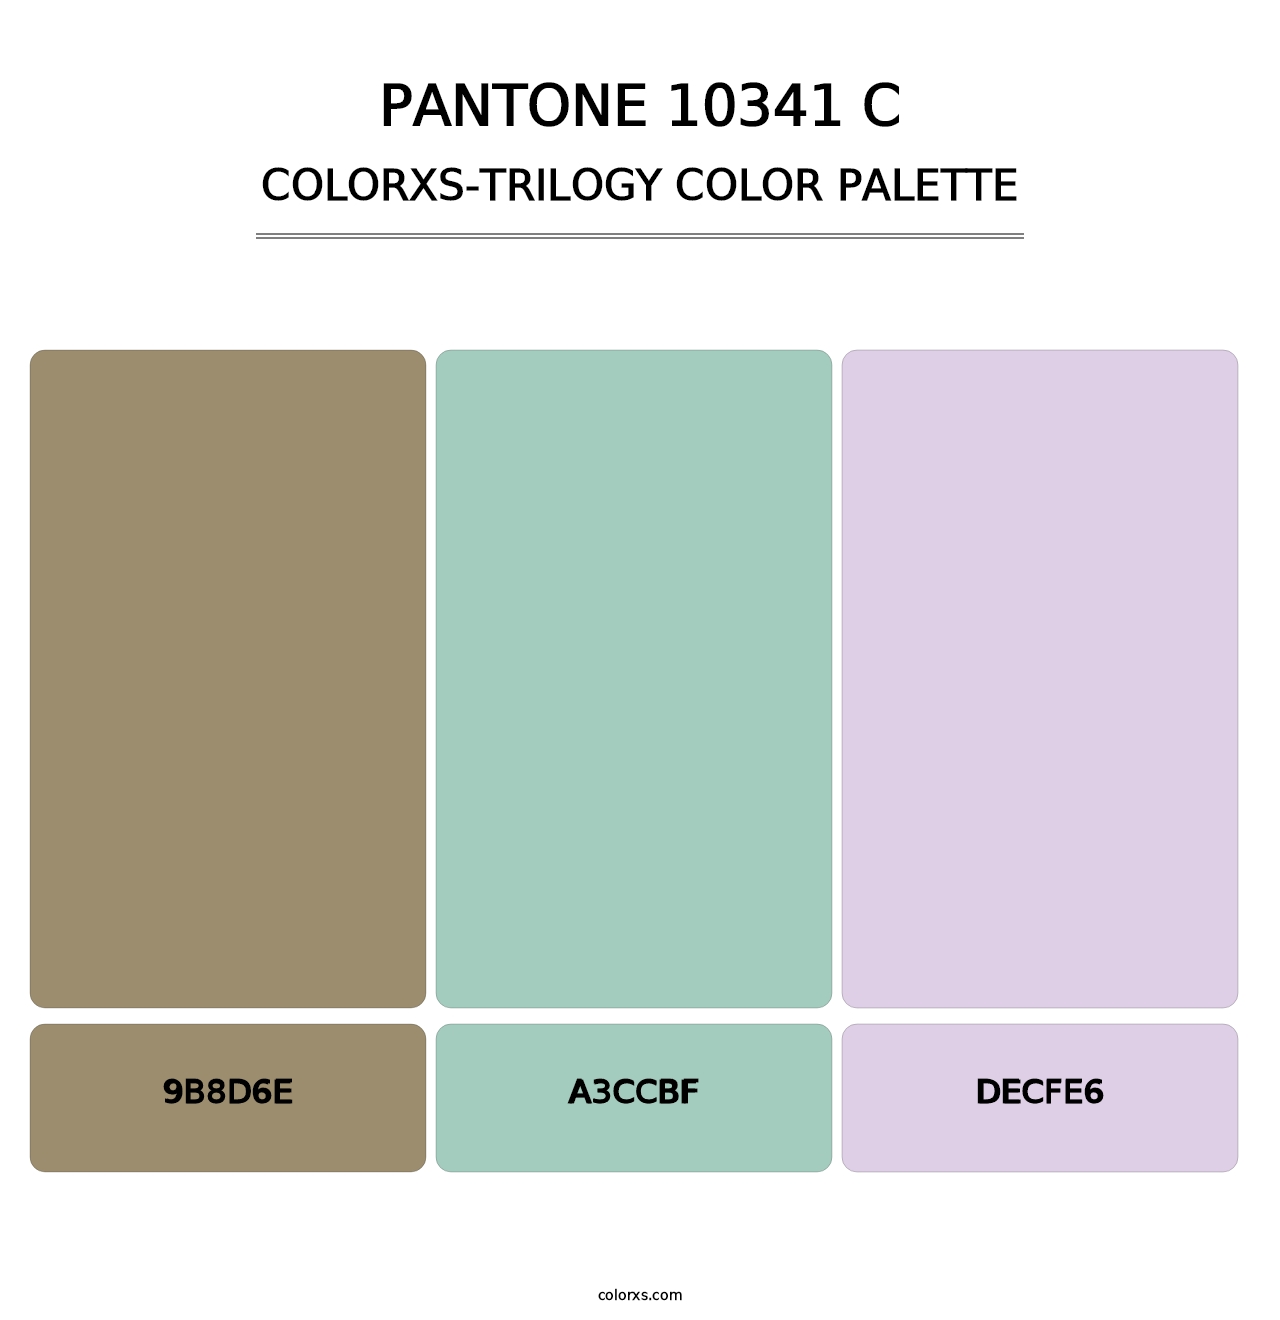 PANTONE 10341 C - Colorxs Trilogy Palette